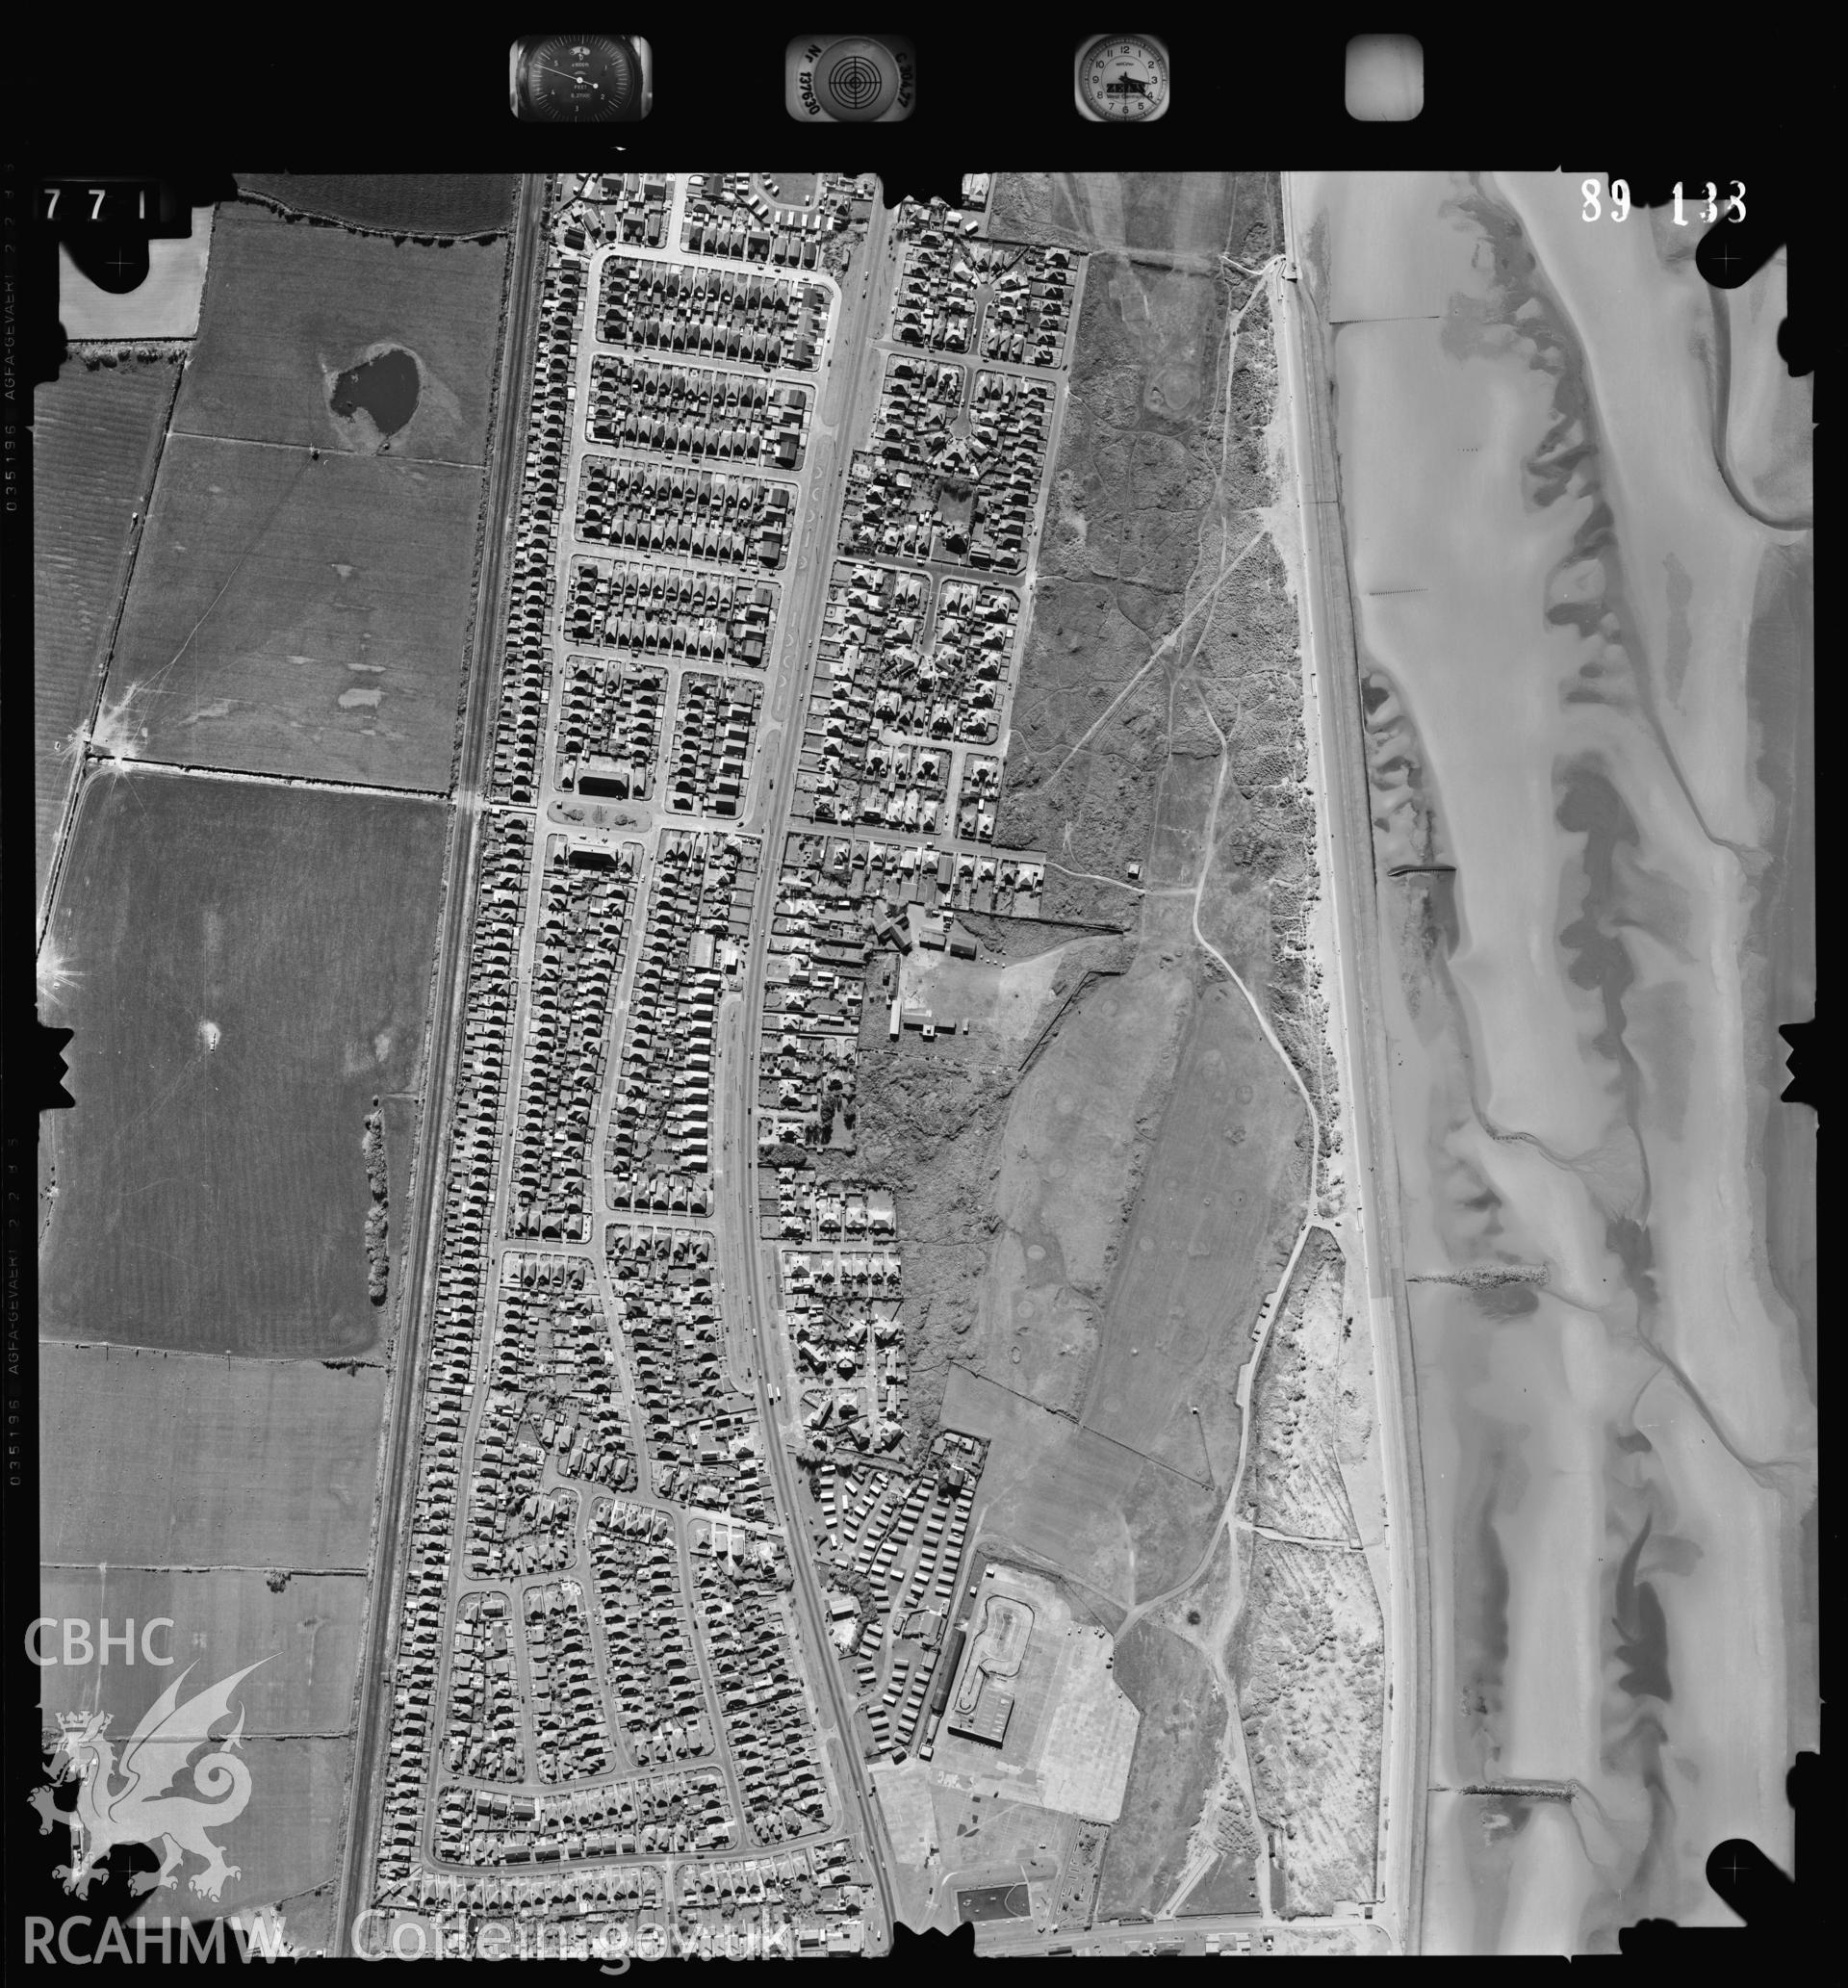 Digital copy of an aerial view of Prestatyn taken by Ordnance Survey. SJ045828.